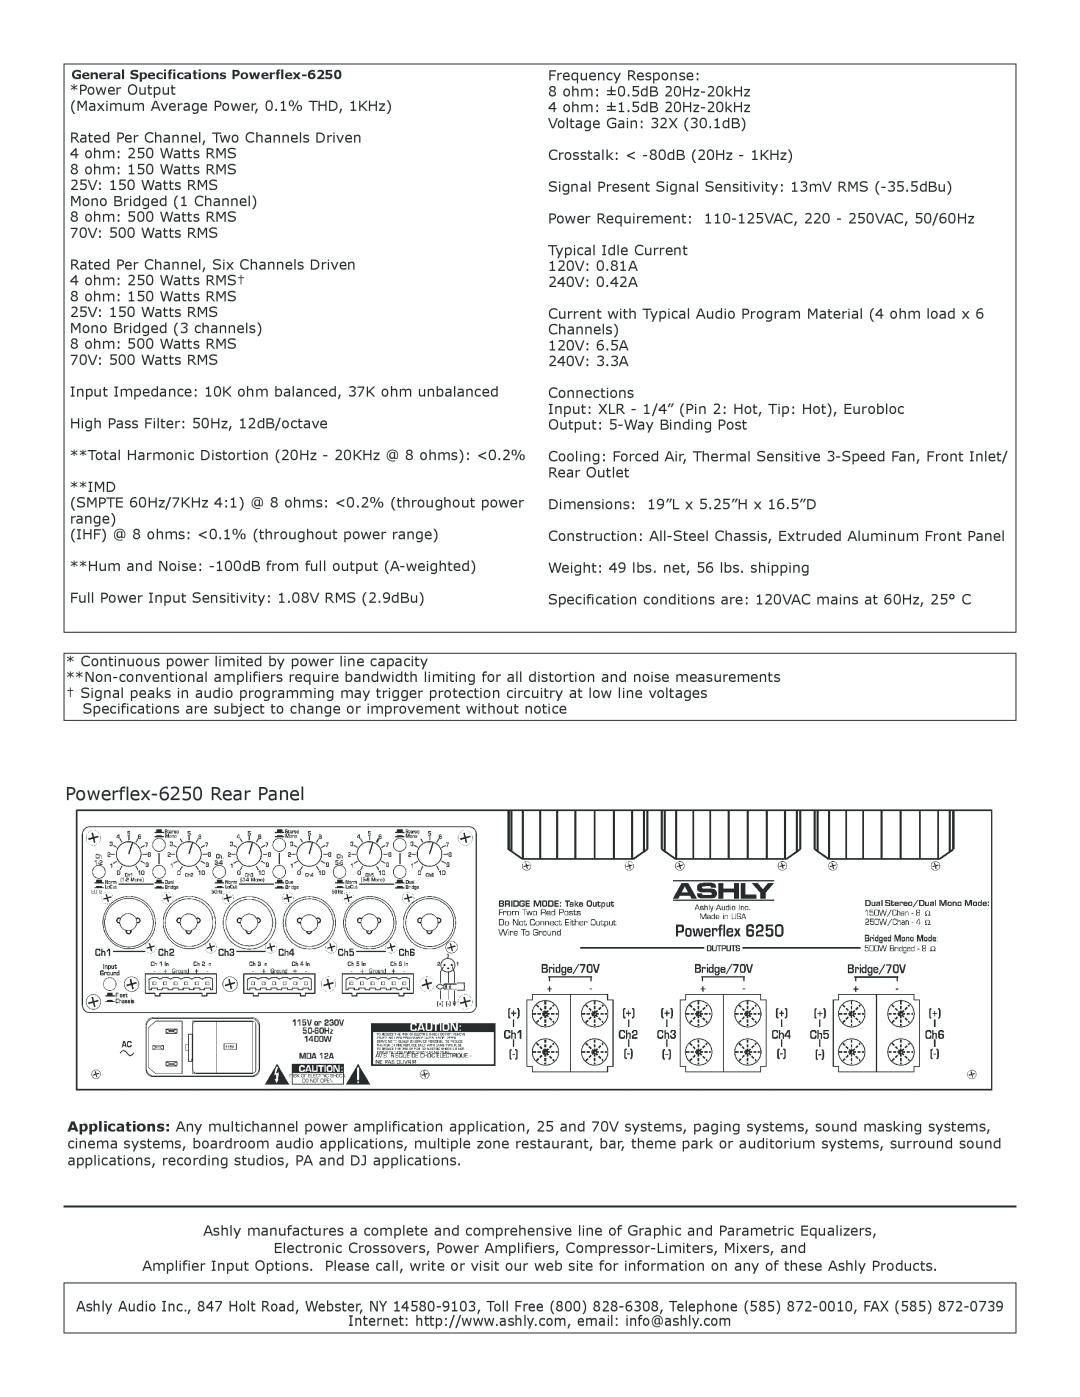 Ashly specifications Powerflex-6250Rear Panel 